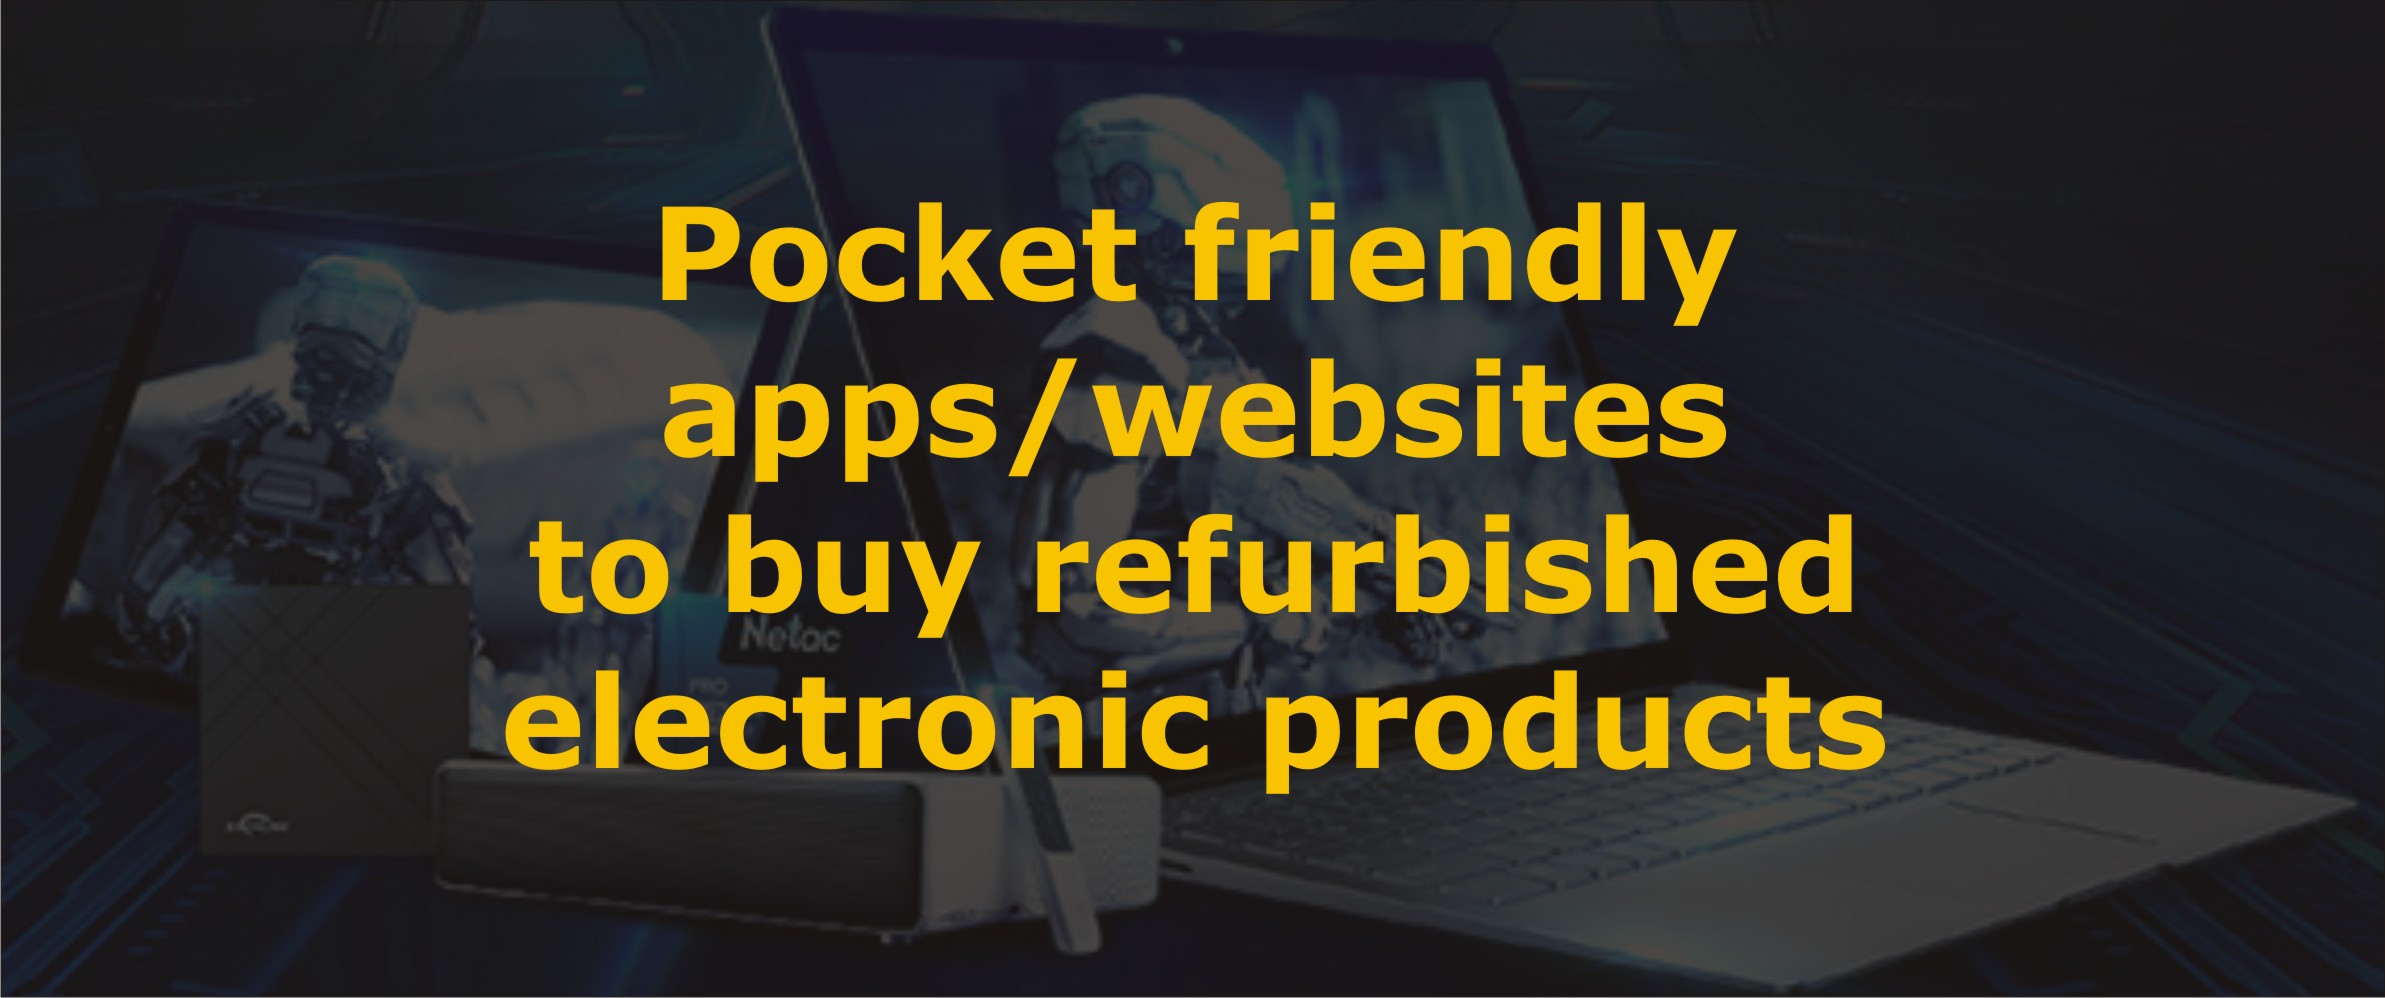 Pocket friendly apps/websites